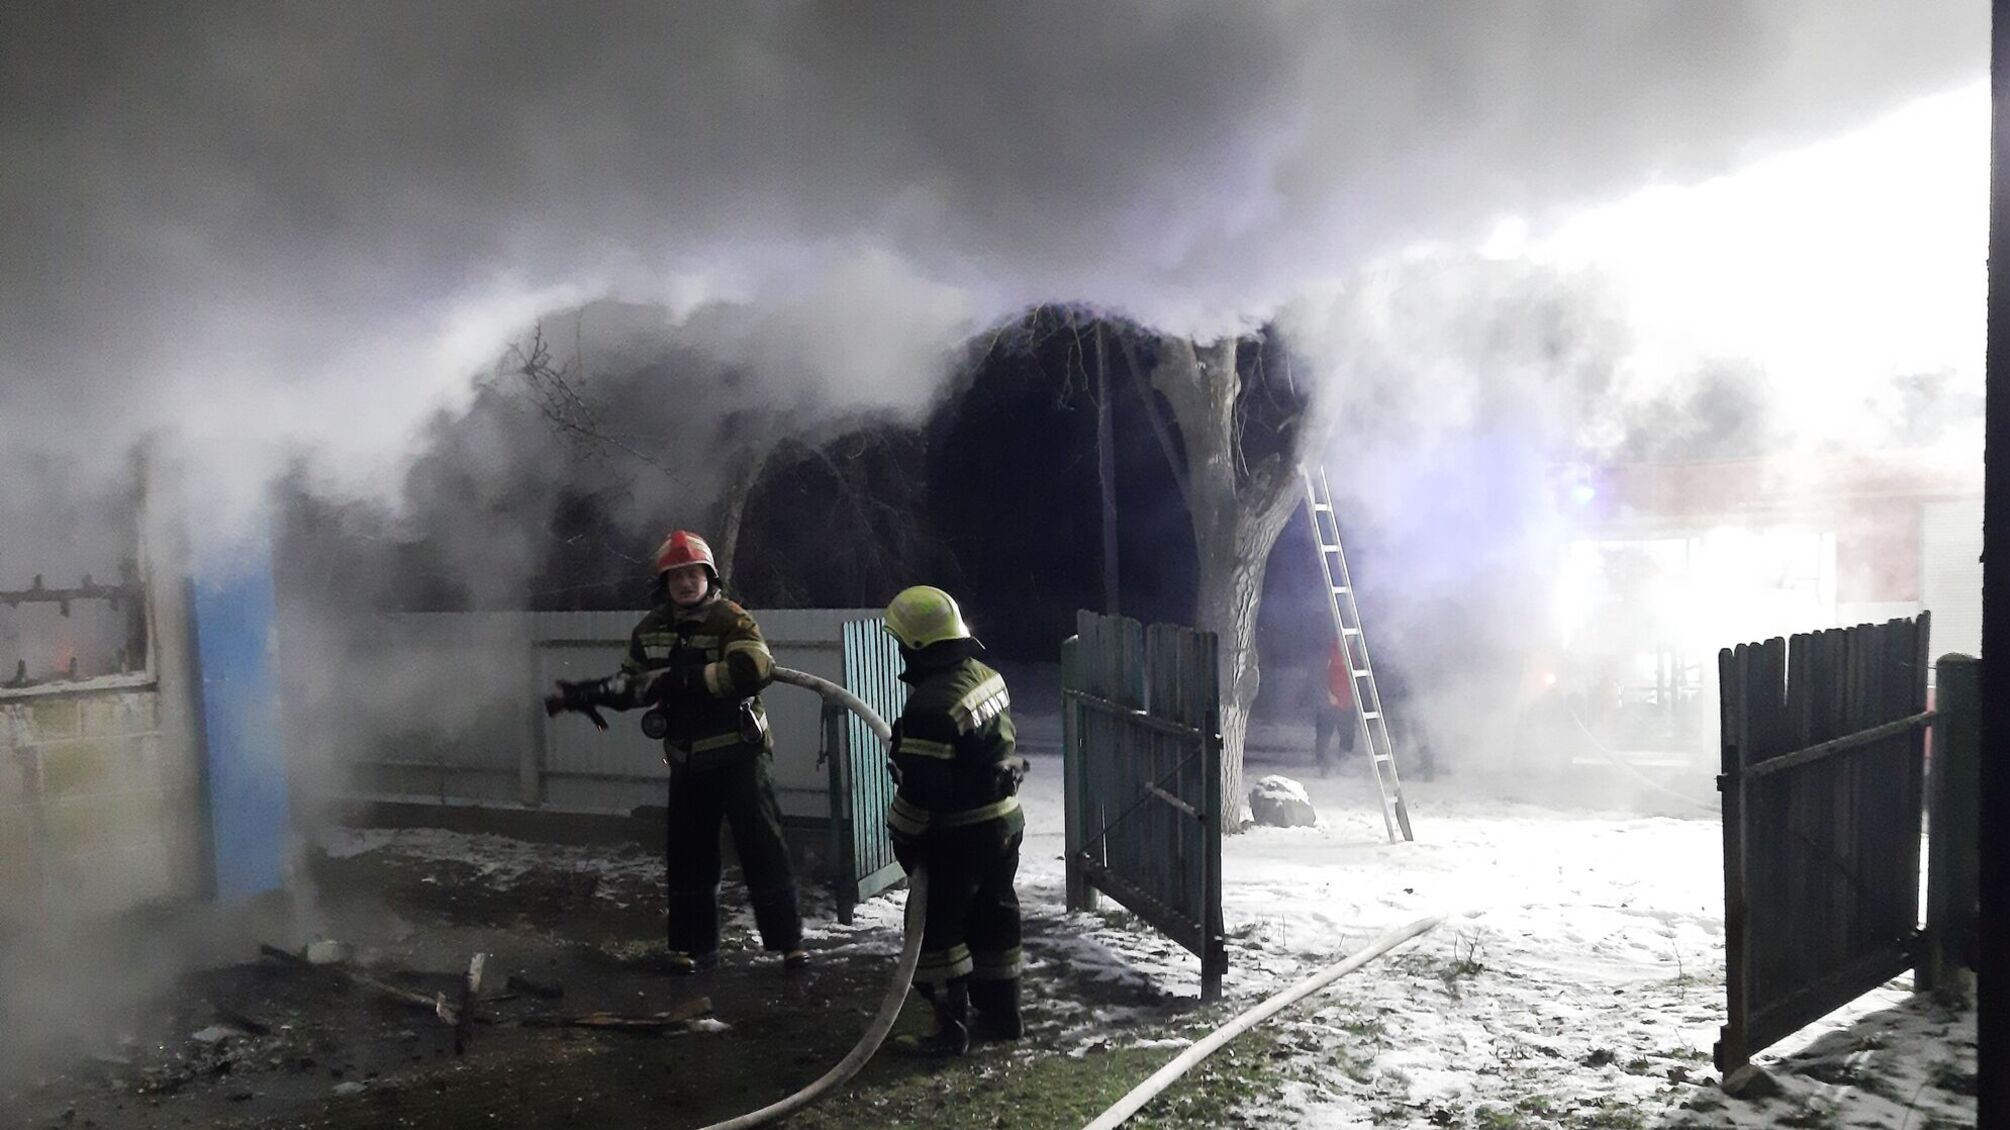 Черкаська область: минулої доби через пічне опалення у приватному житловому секторі виникло 6 пожеж